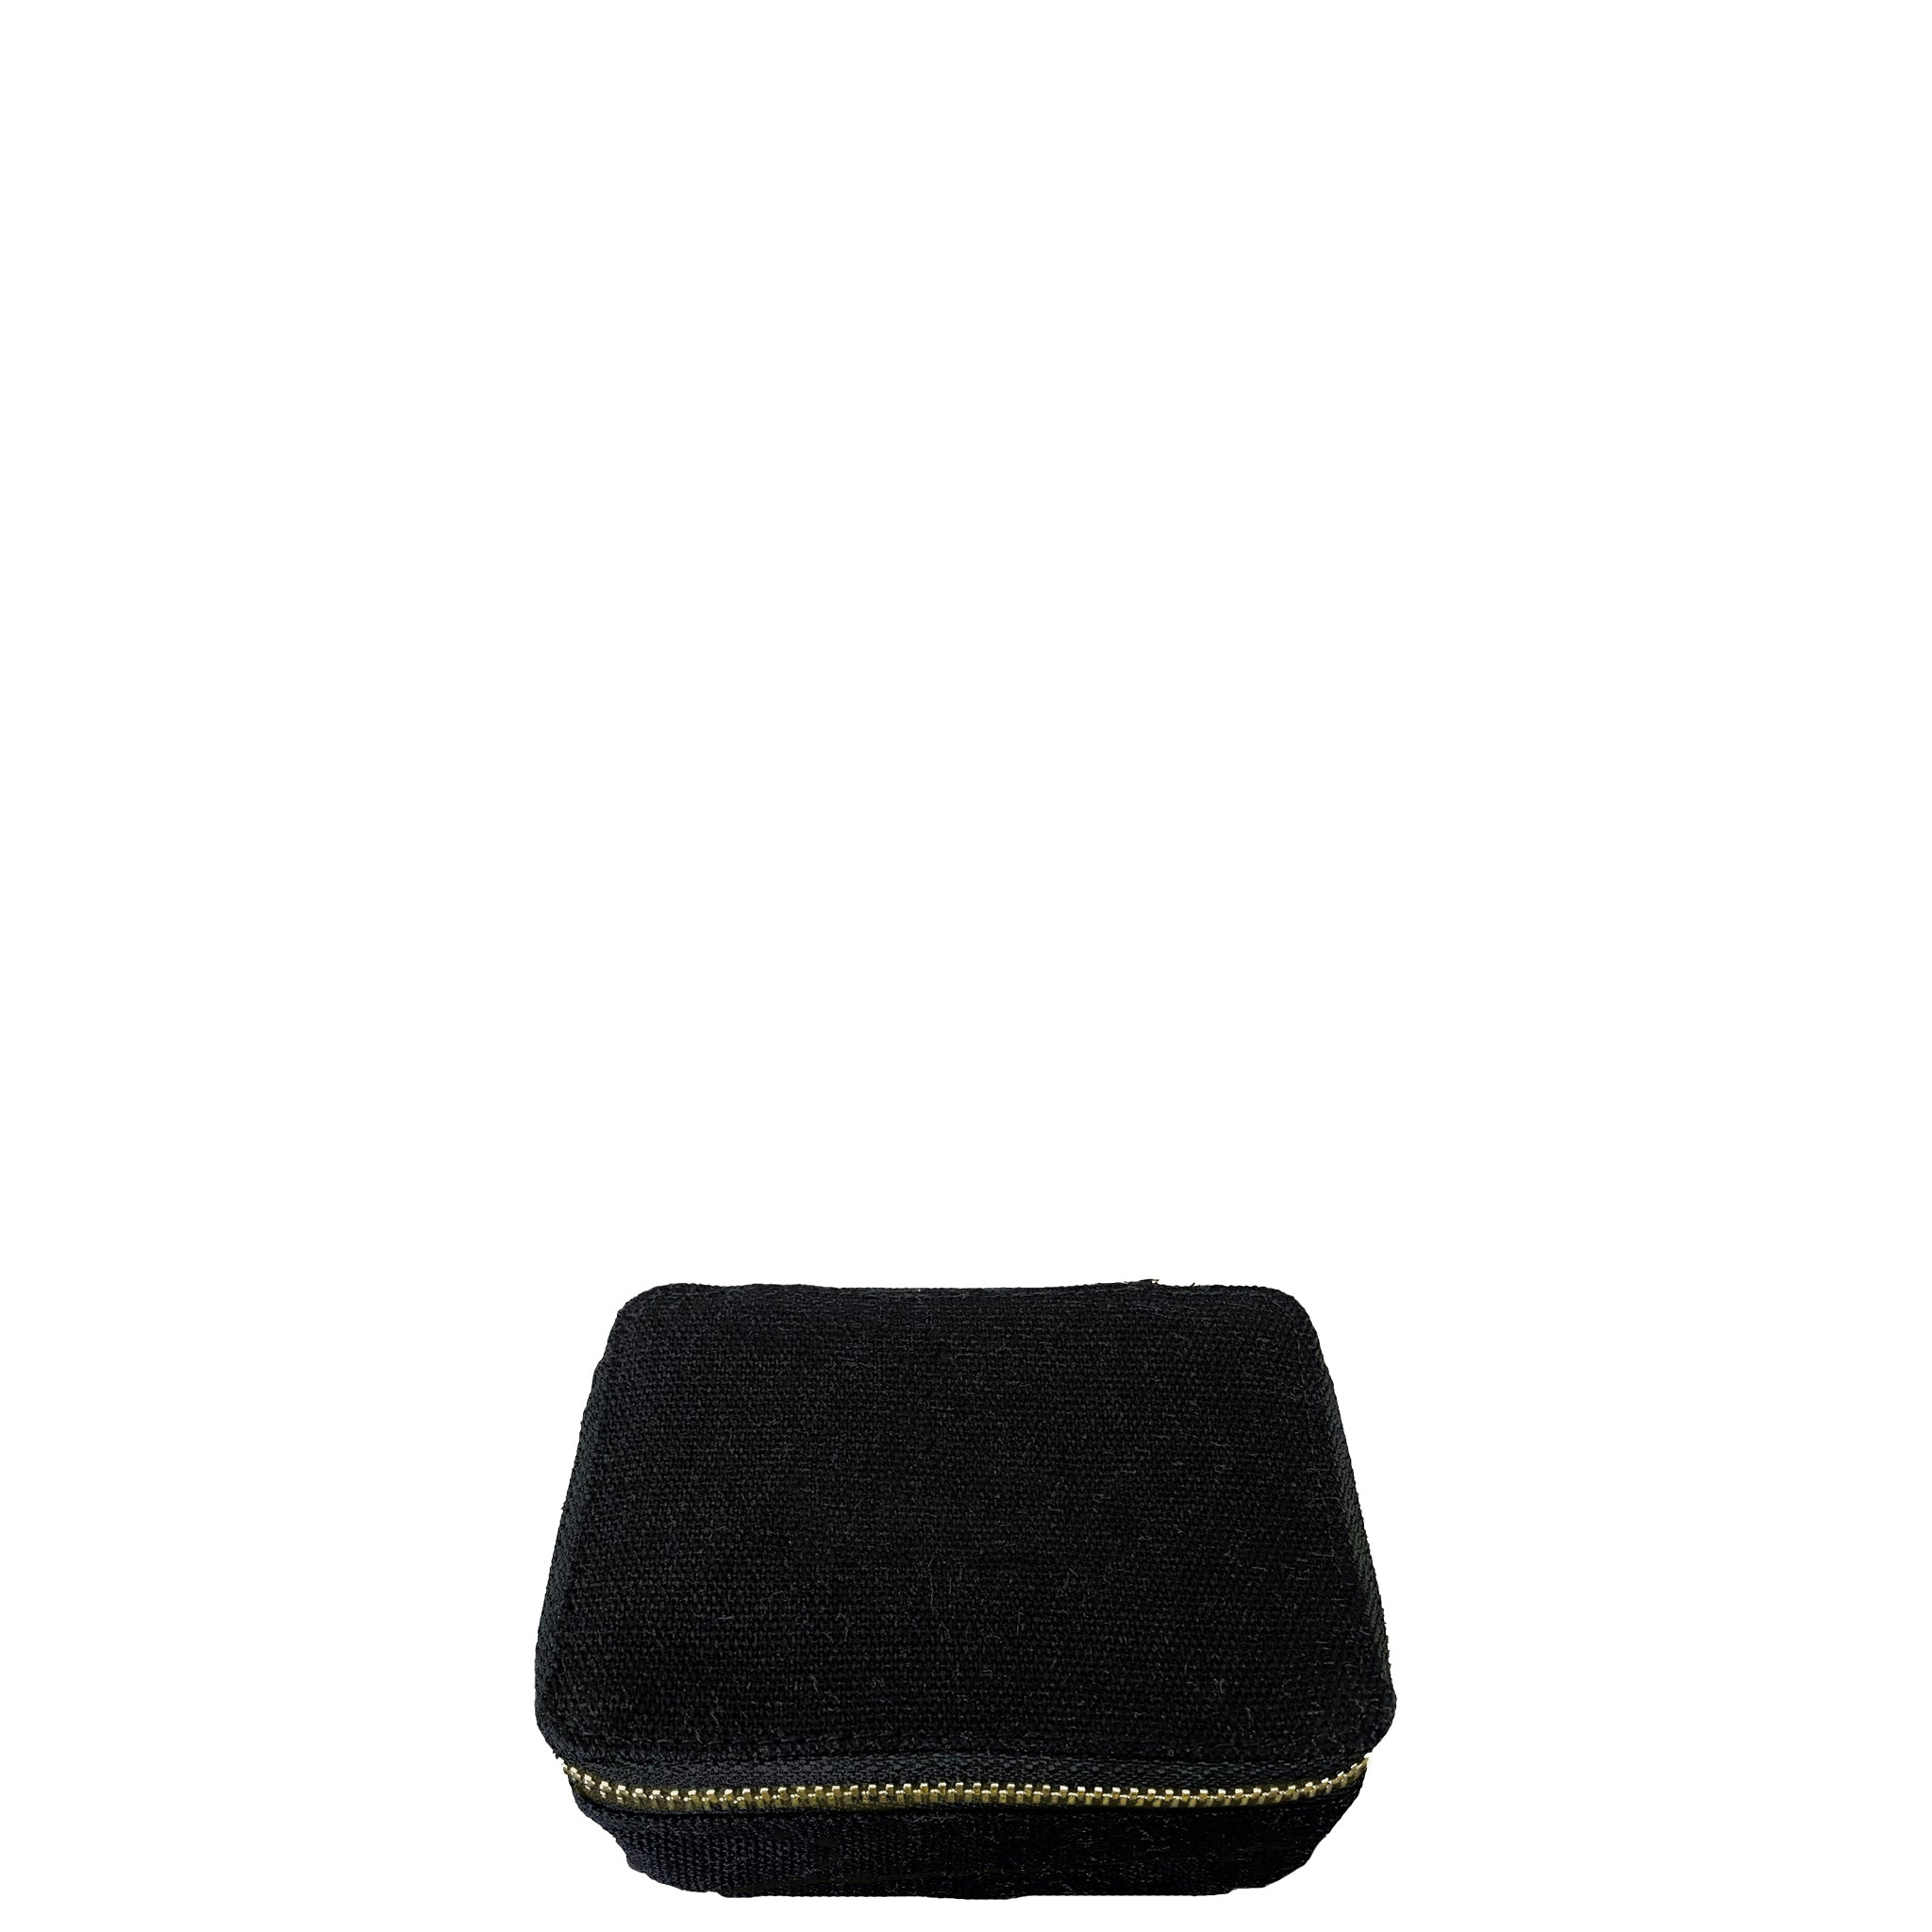 Boîte de Rangement pour Bijoux "Jewelry/Trinket Box", Noire | Bag-all France